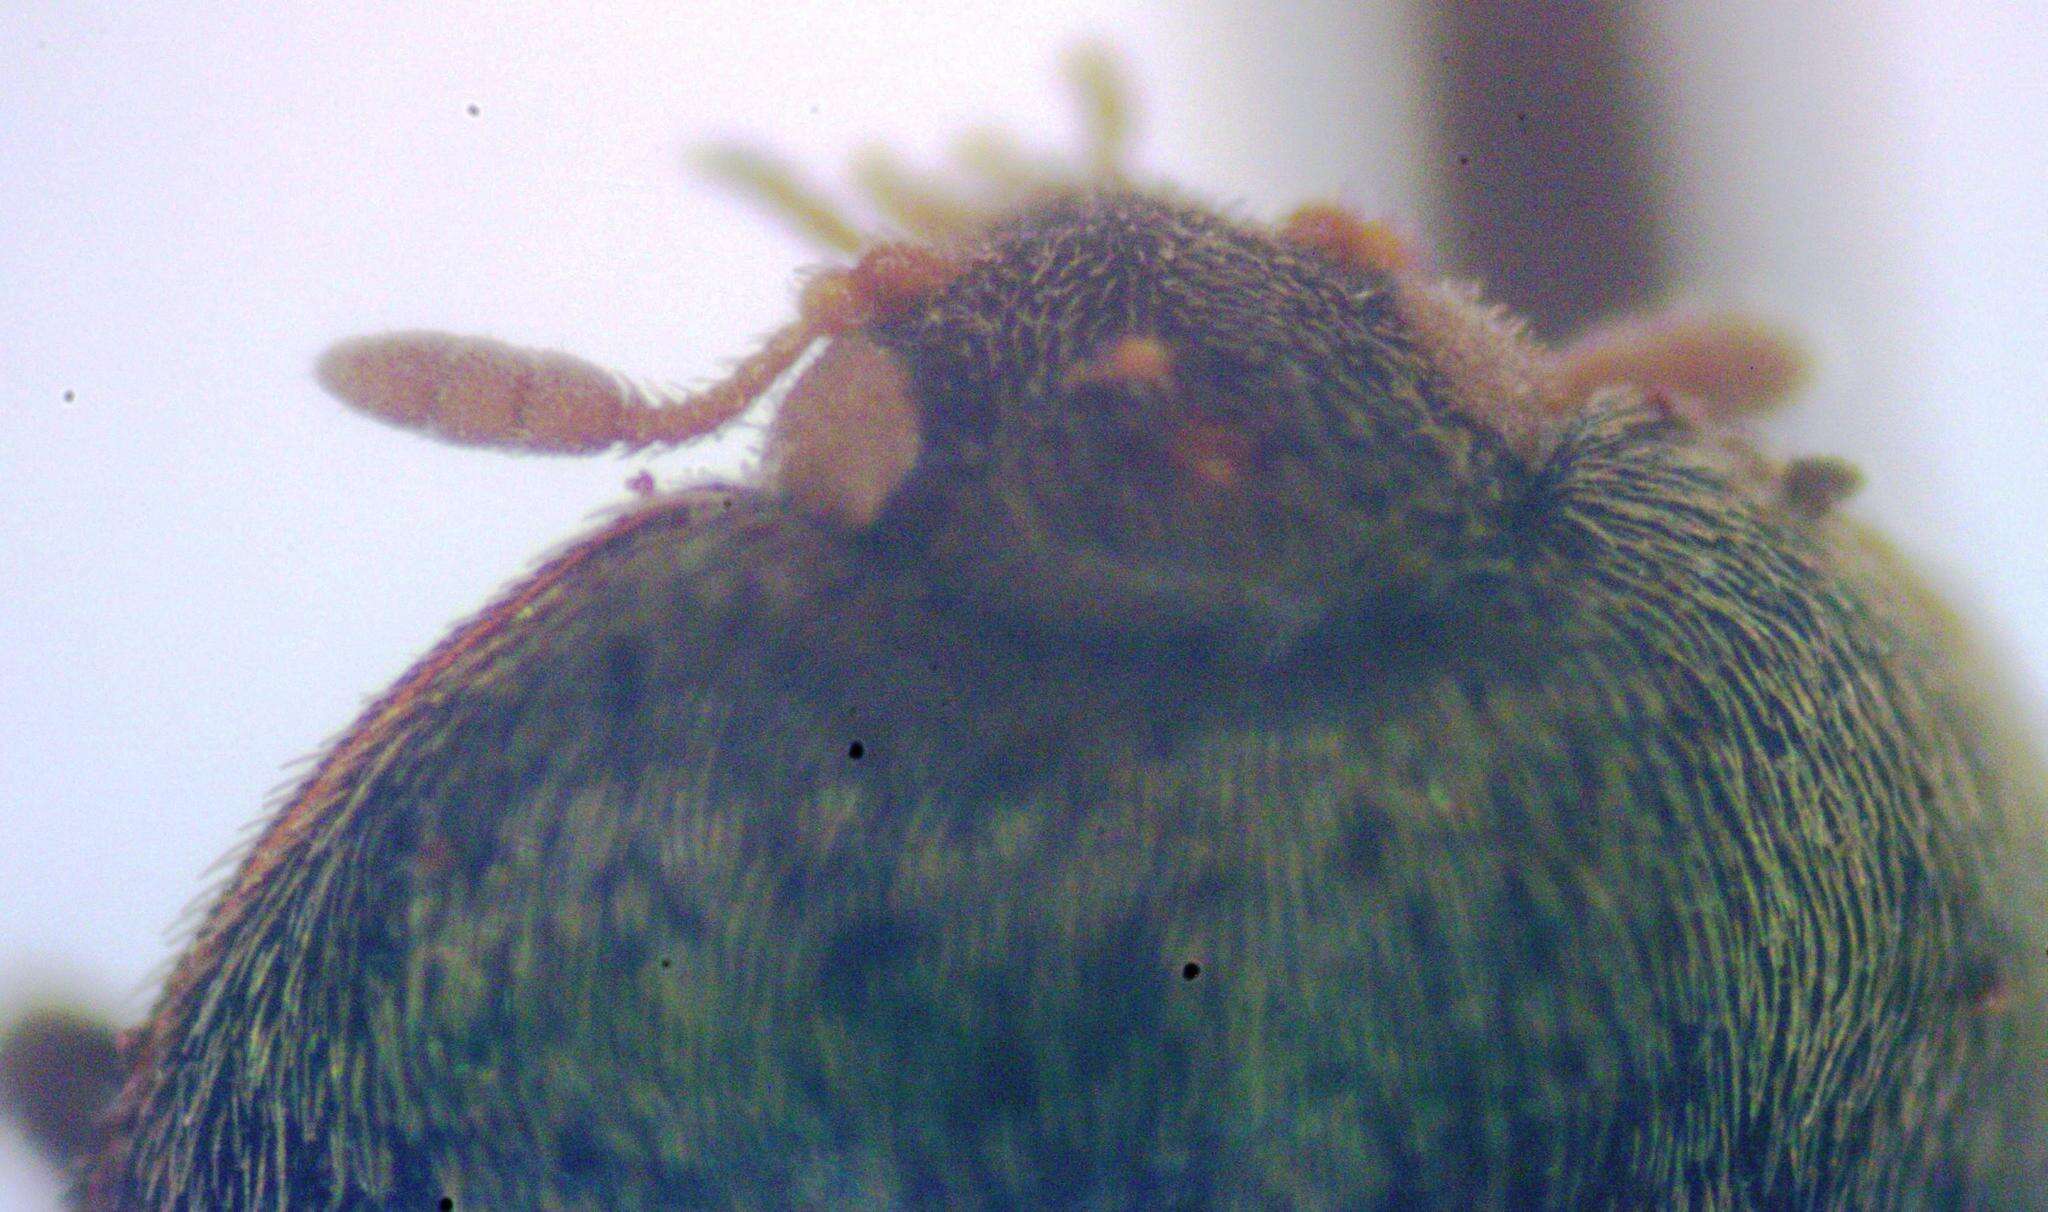 Image of Banded Black Carpet Beetle